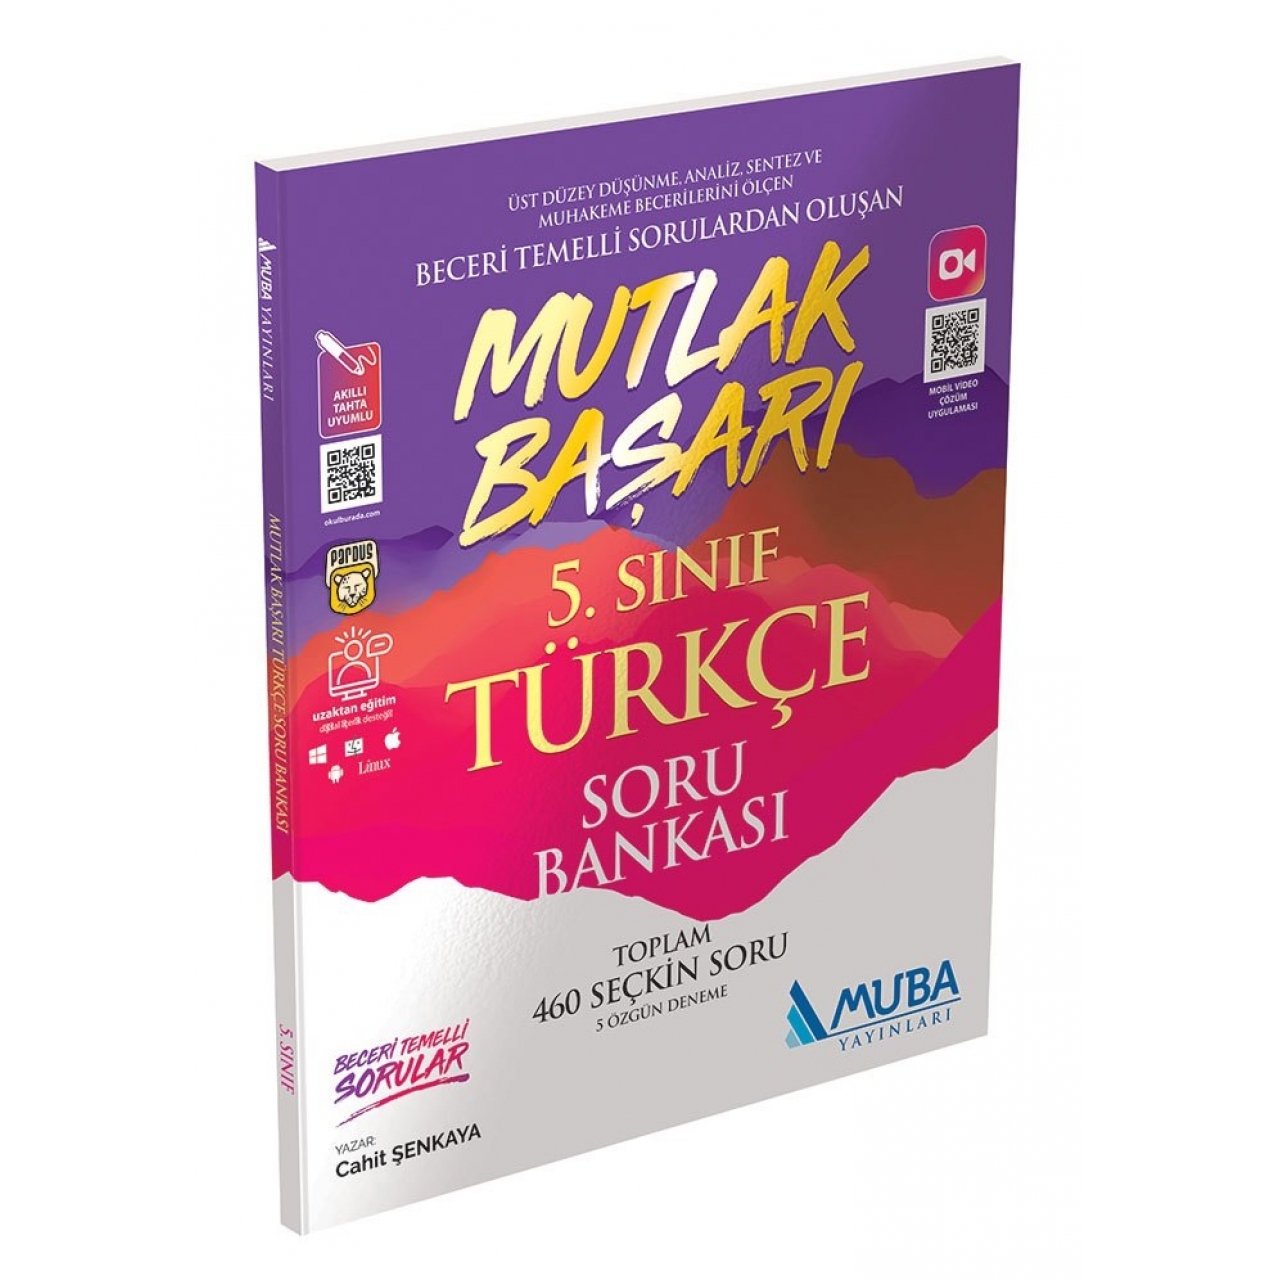 5. Sınıf Türkçe Soru Bankası Muba Yayınları